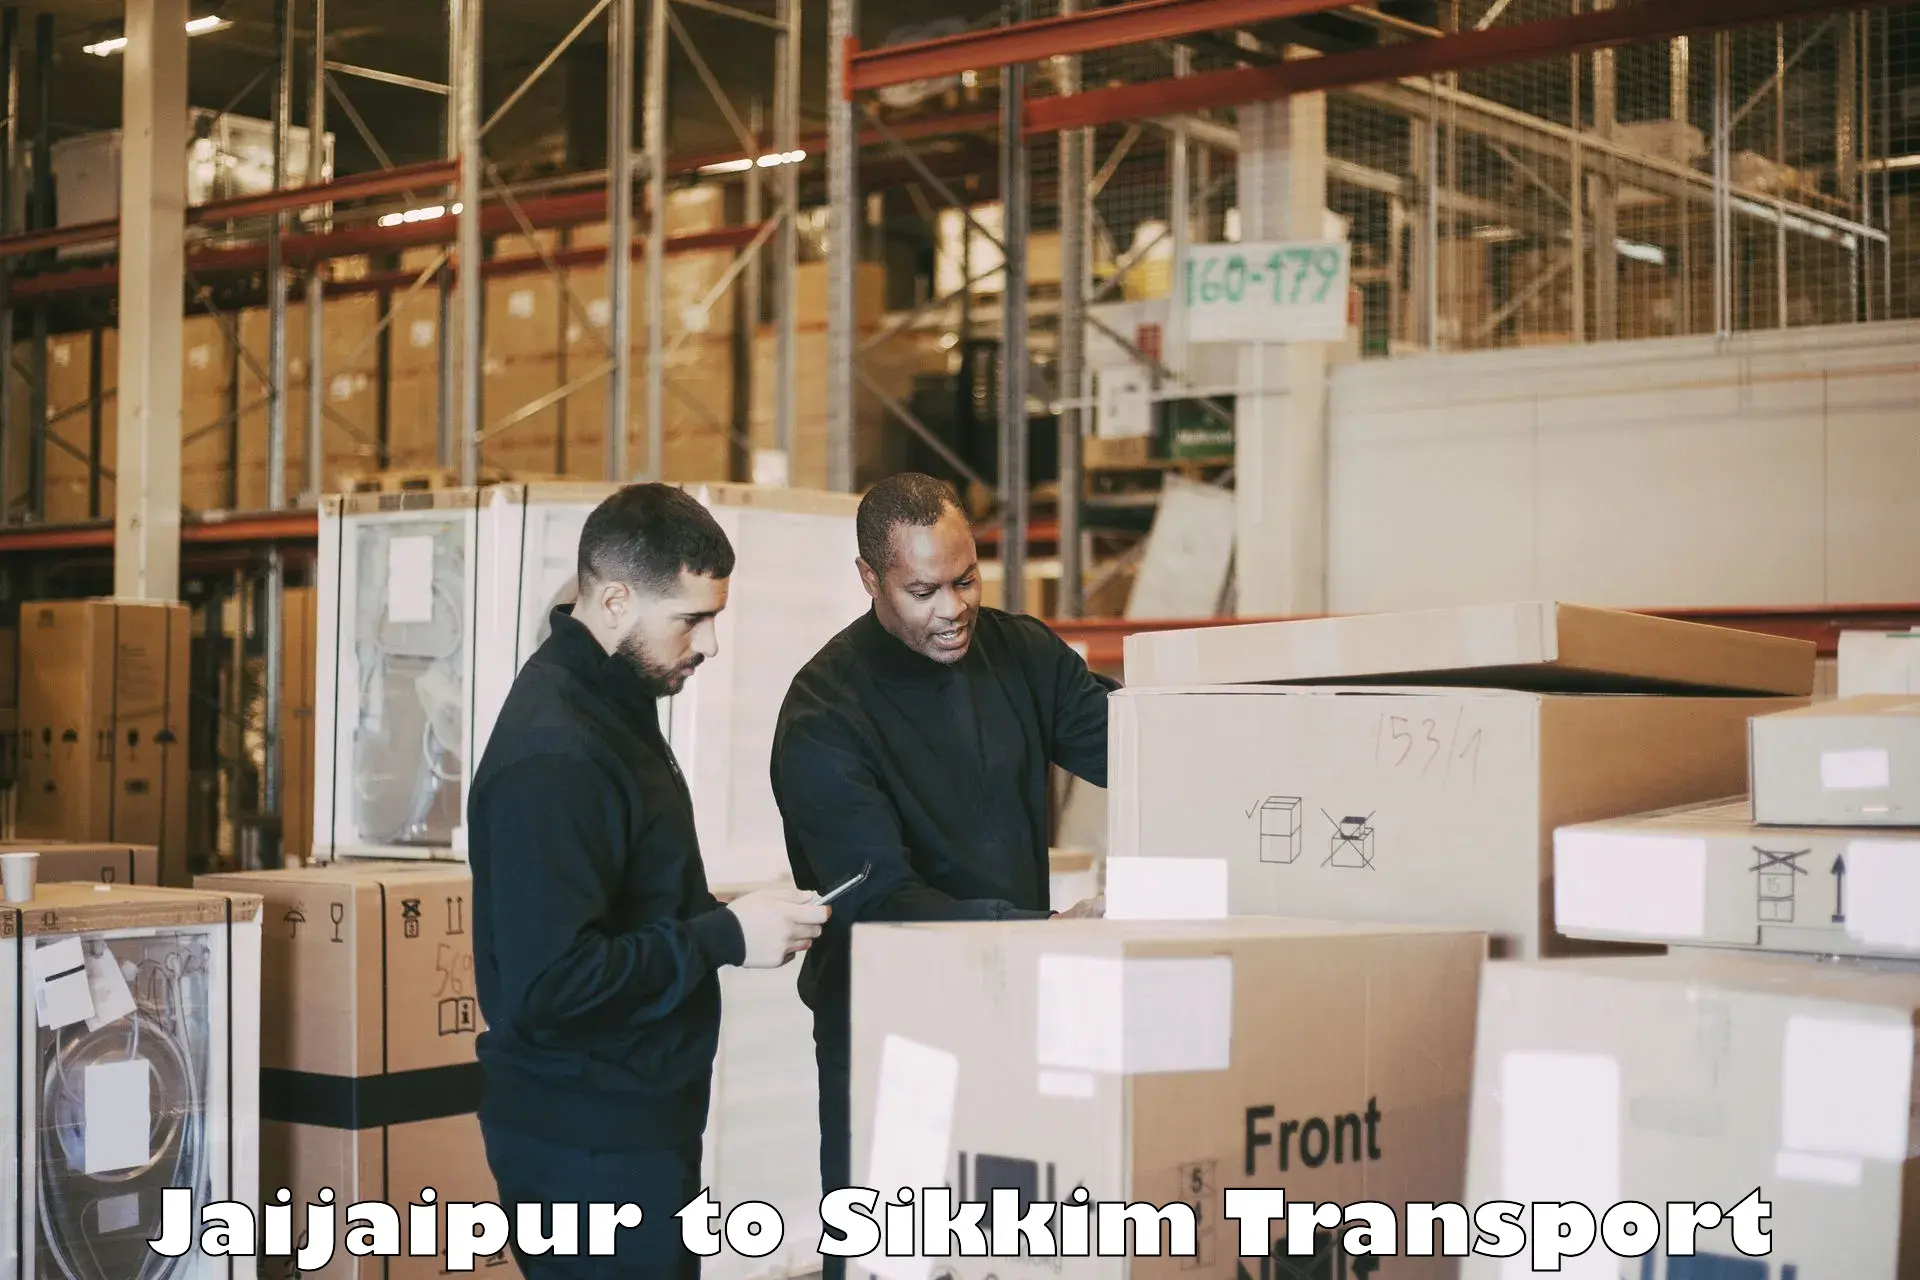 Delivery service Jaijaipur to Mangan